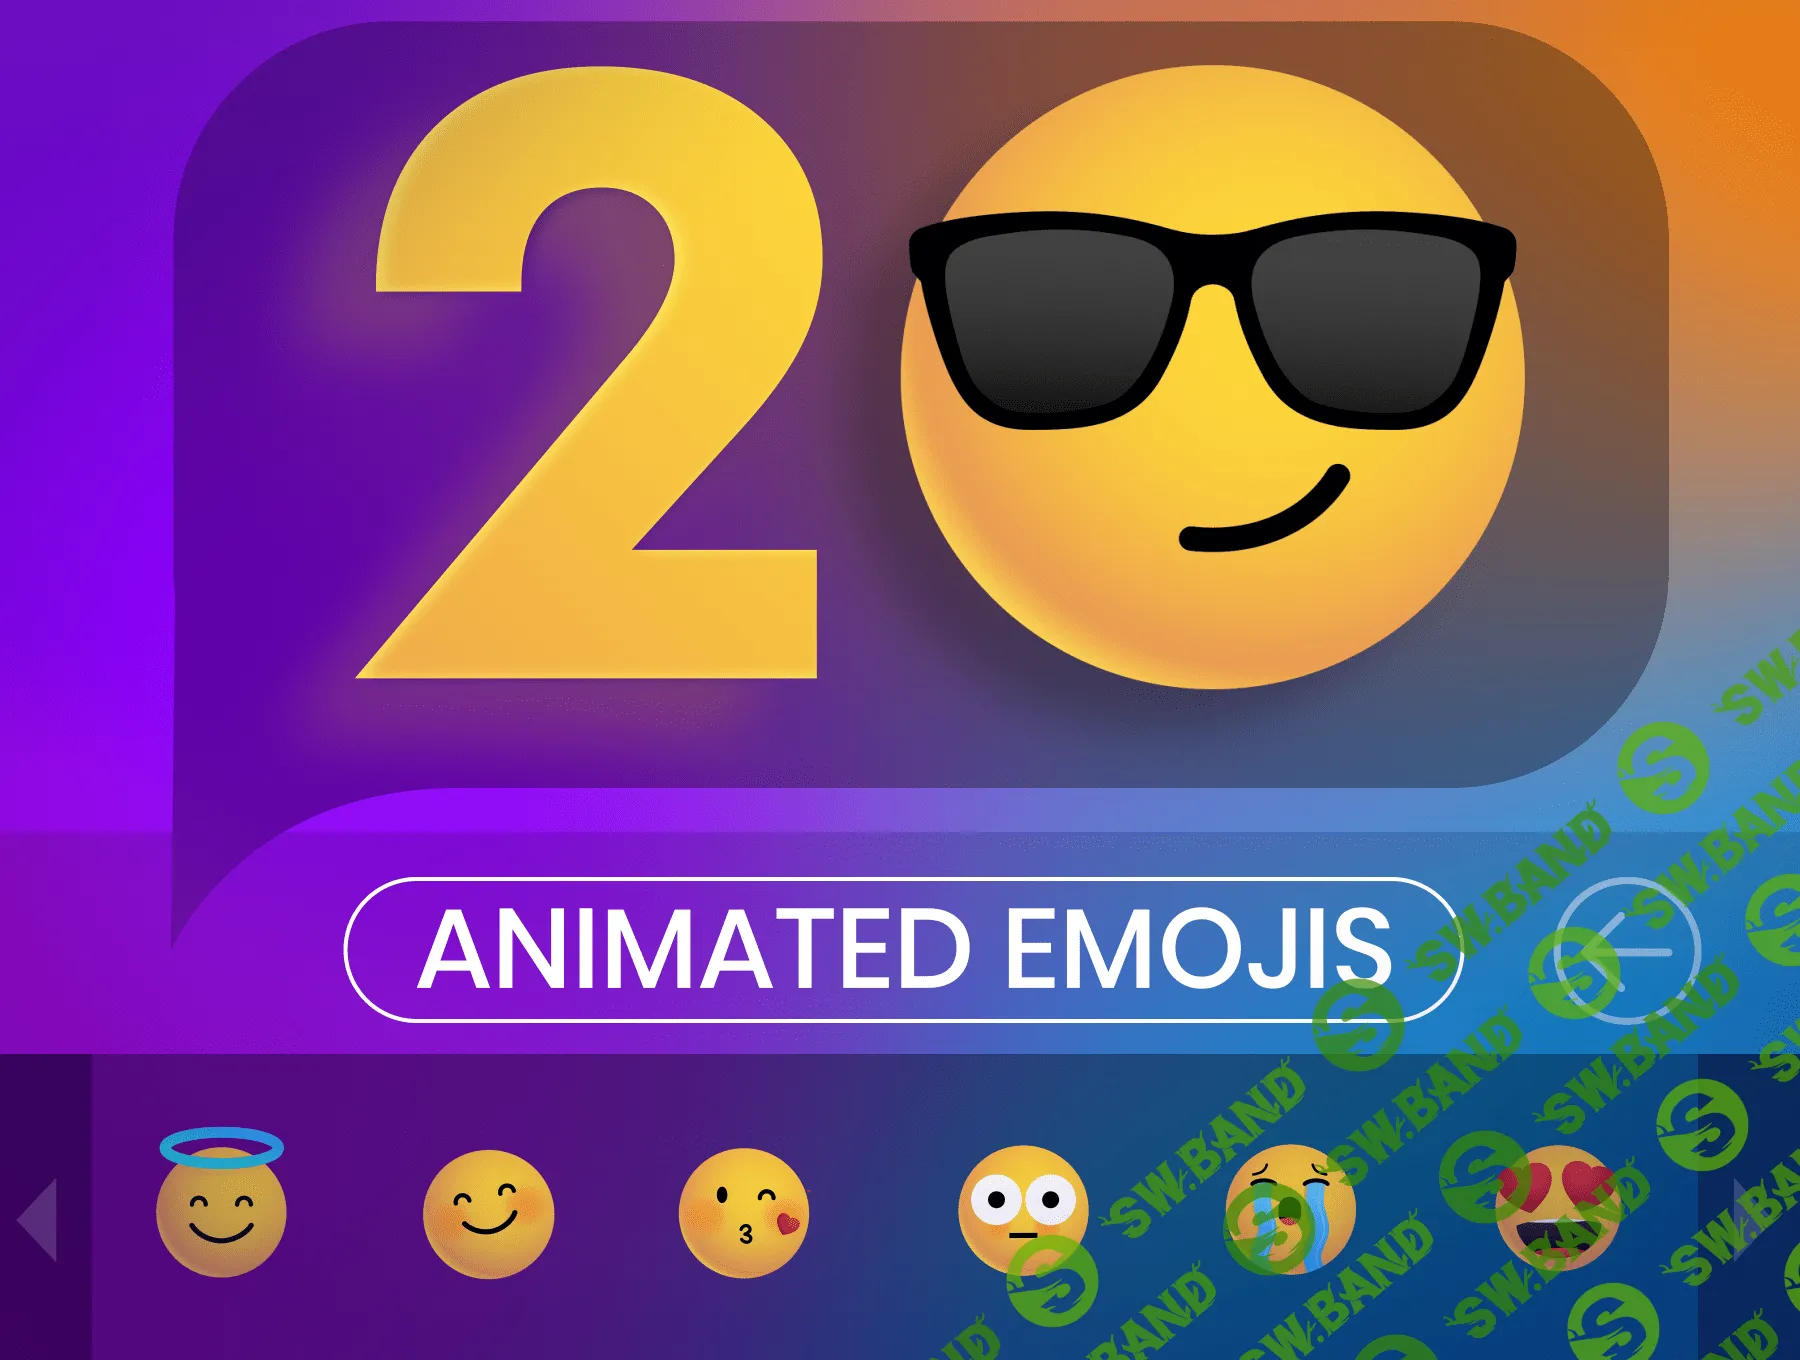 [UI8] Animovin Emoji Pack - 20 Animated Emojis (2021)